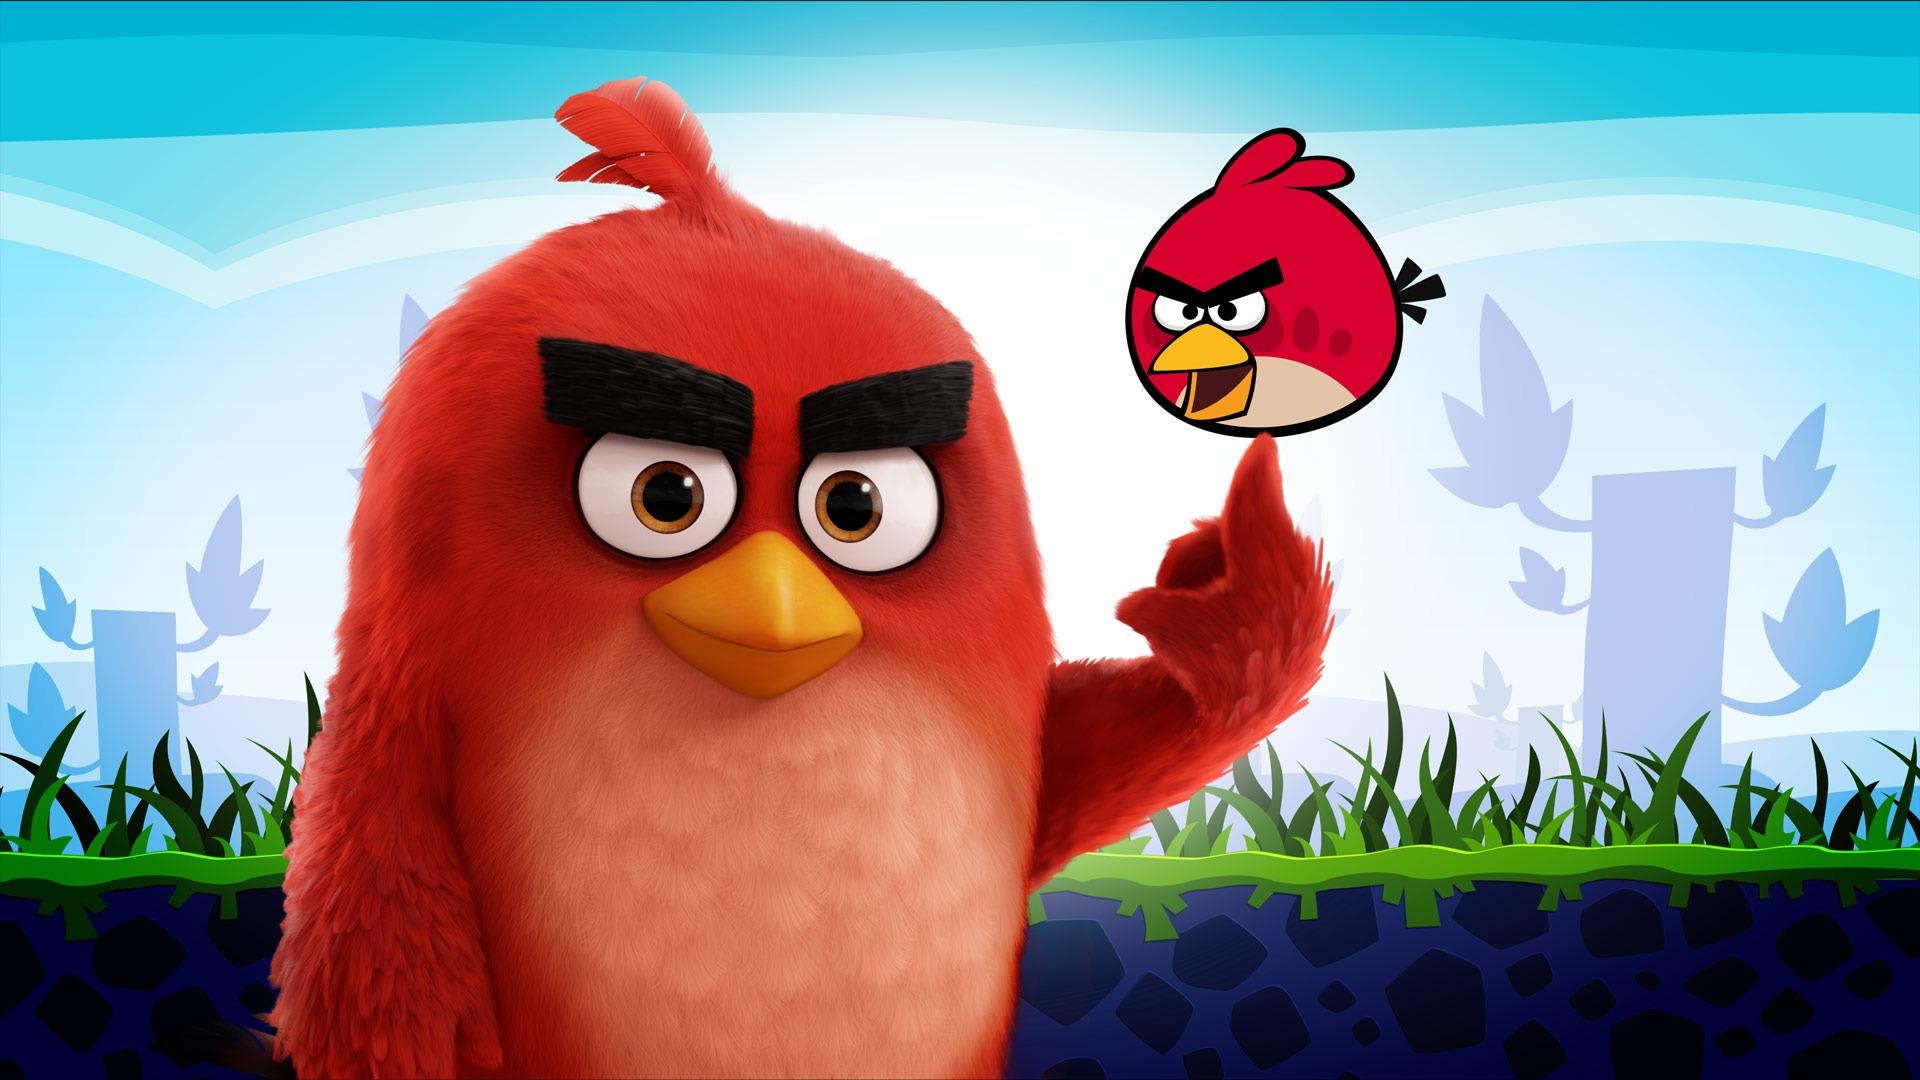 Художники превратили Angry Birds в людей